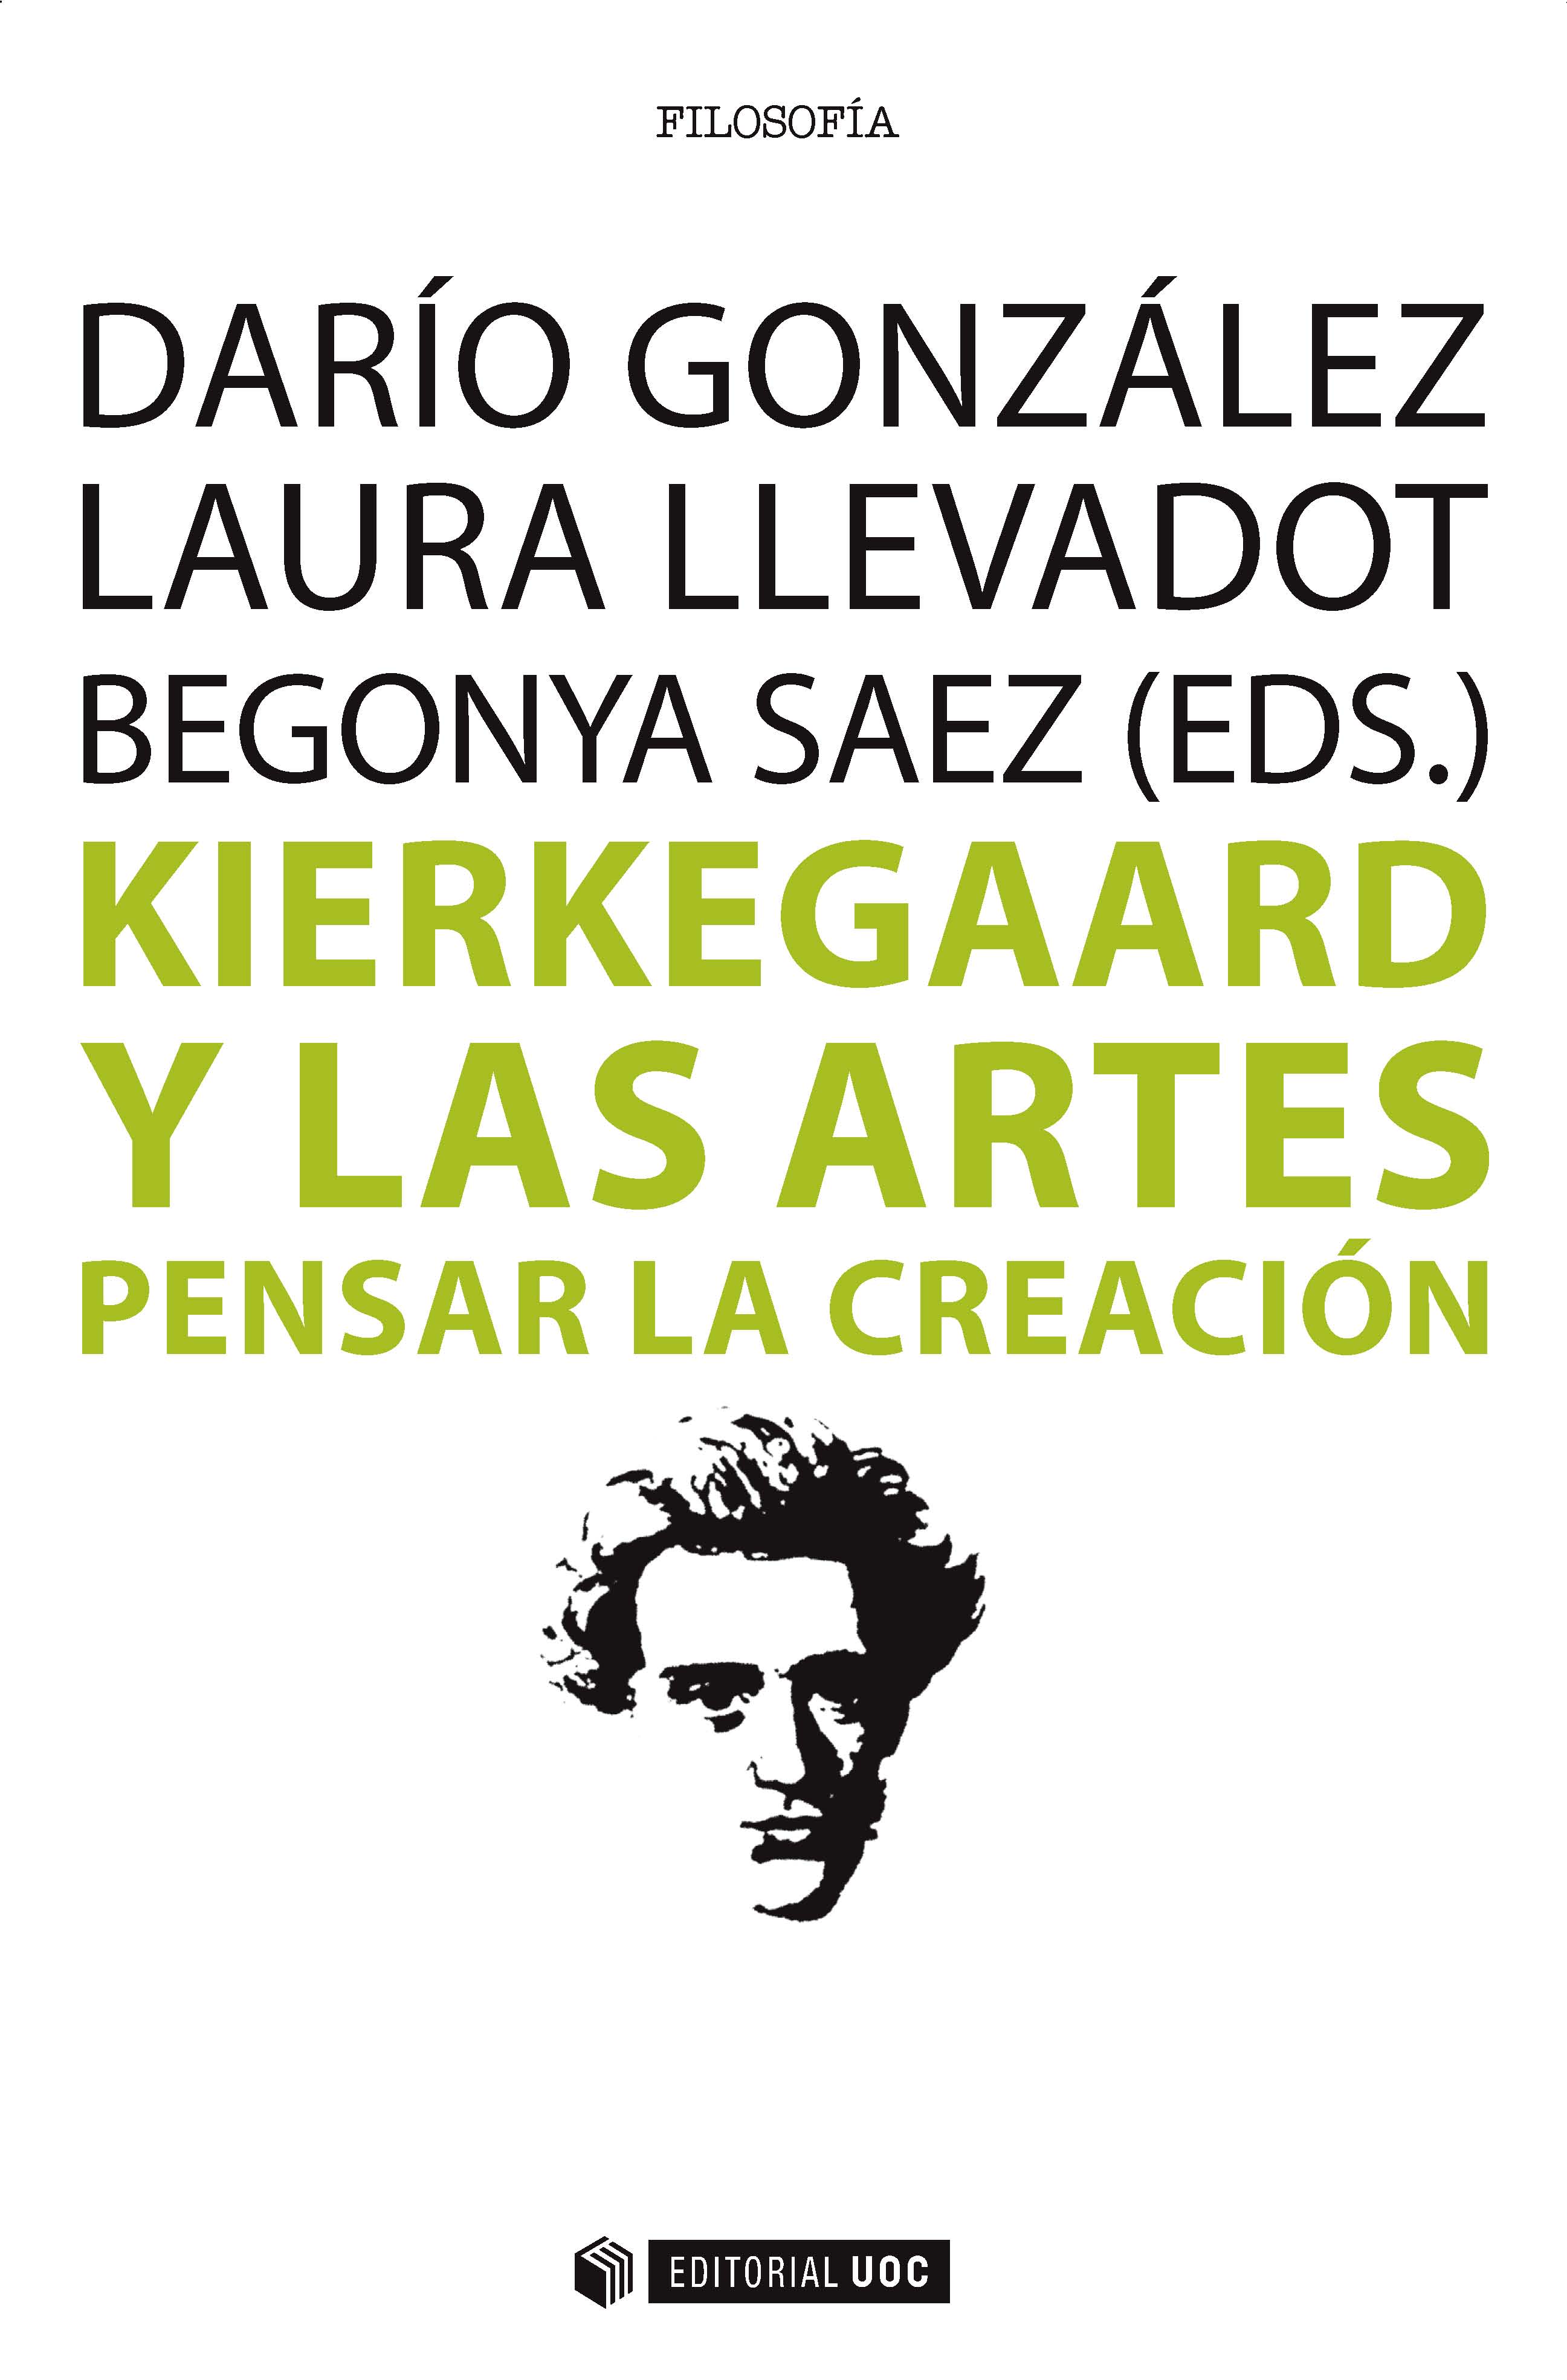 Kierkegaard y las artes